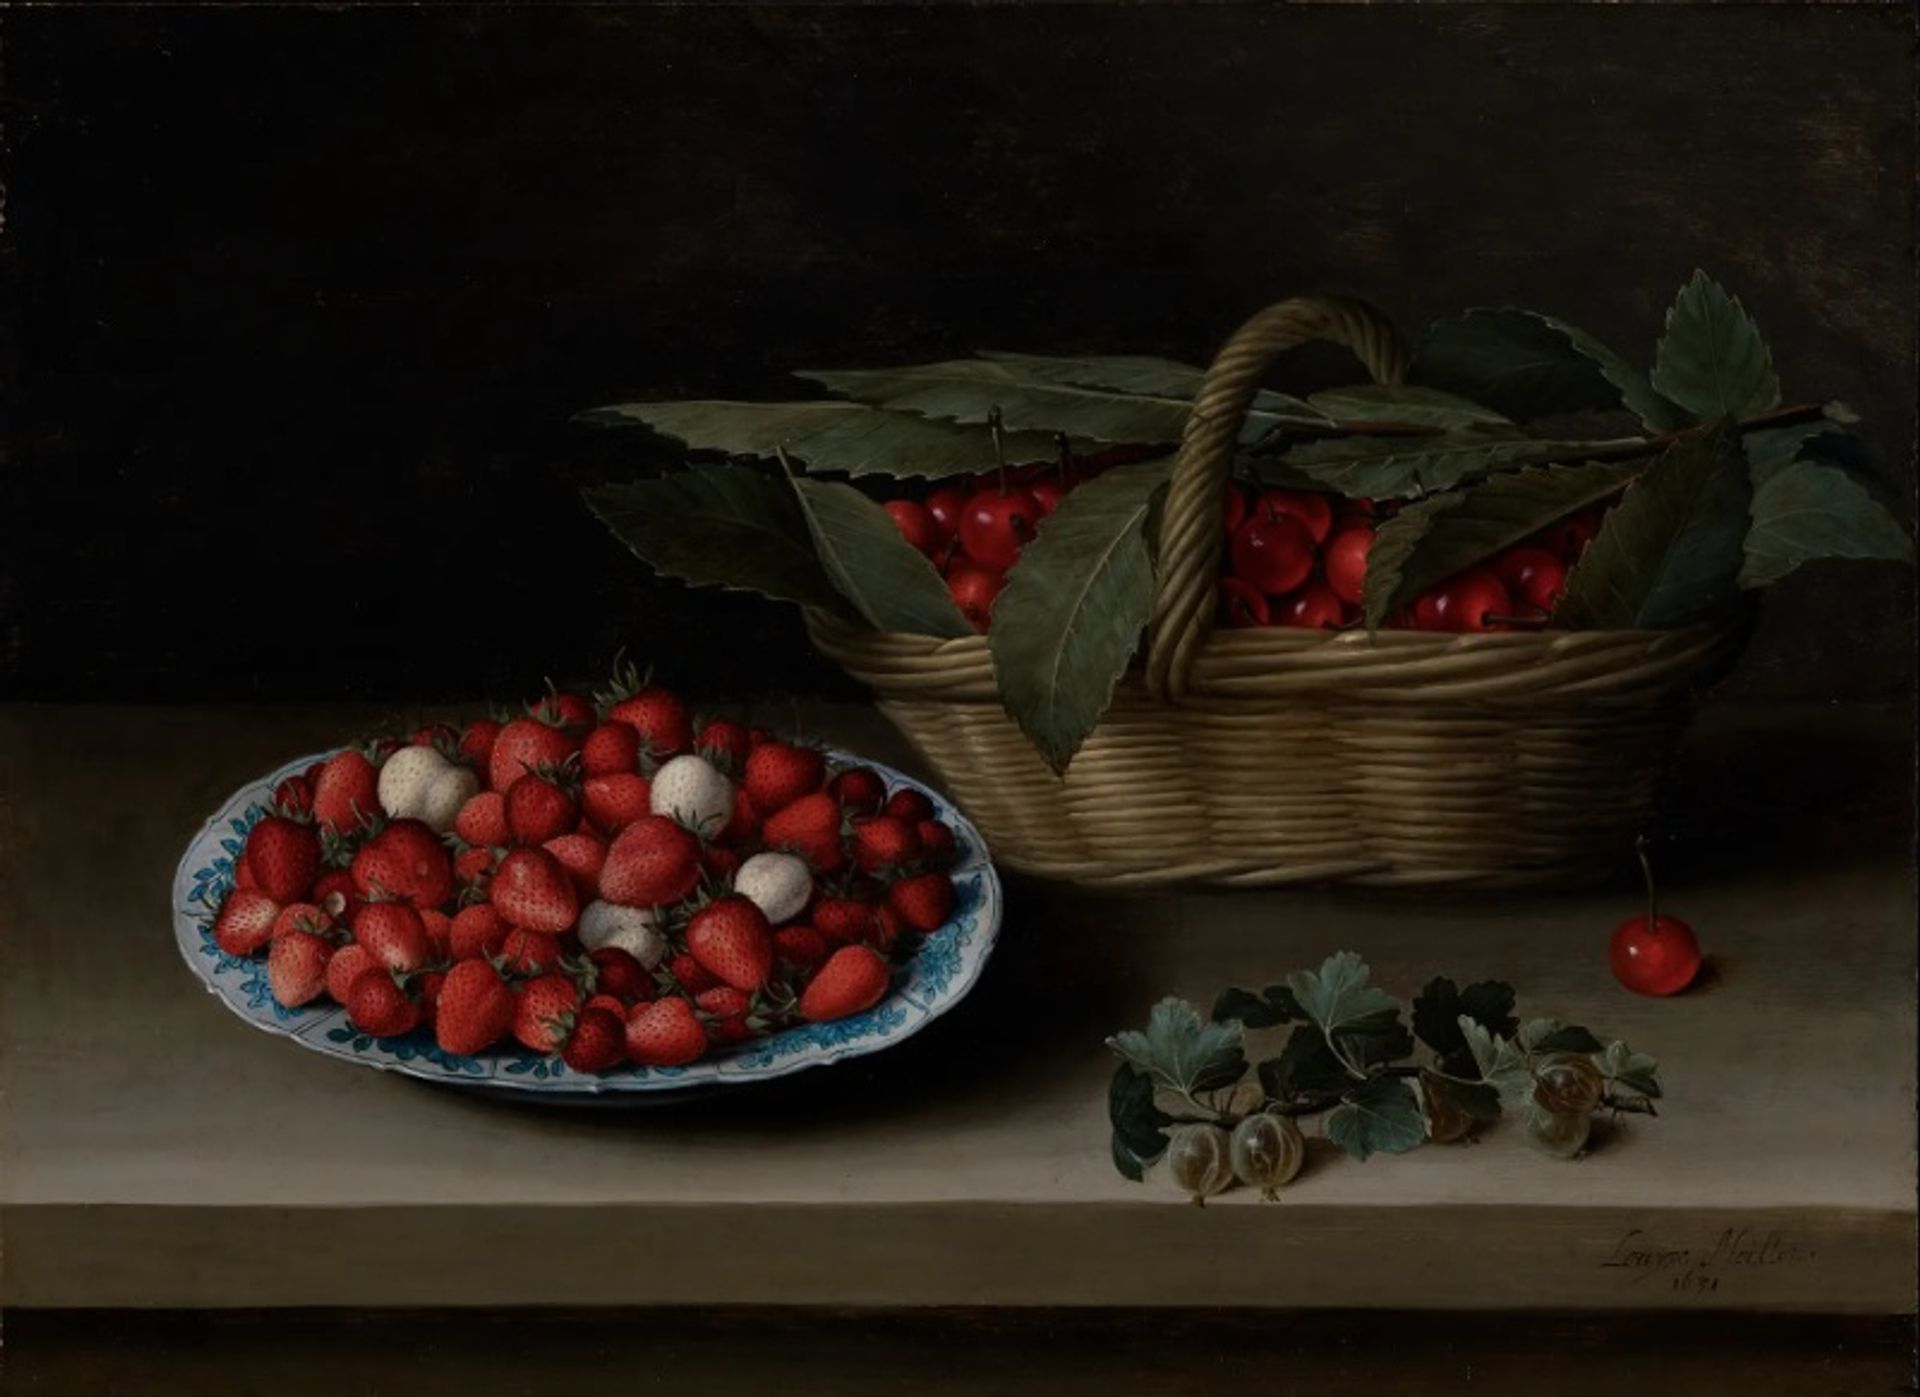 לואיז מוואלון, טבע דומם של קערת תותים, סל דובדבנים וענף דומדמניות, 1631

באדיבות "מוזיאון קימבל לאמנות", בפורט וורת', בטקסס